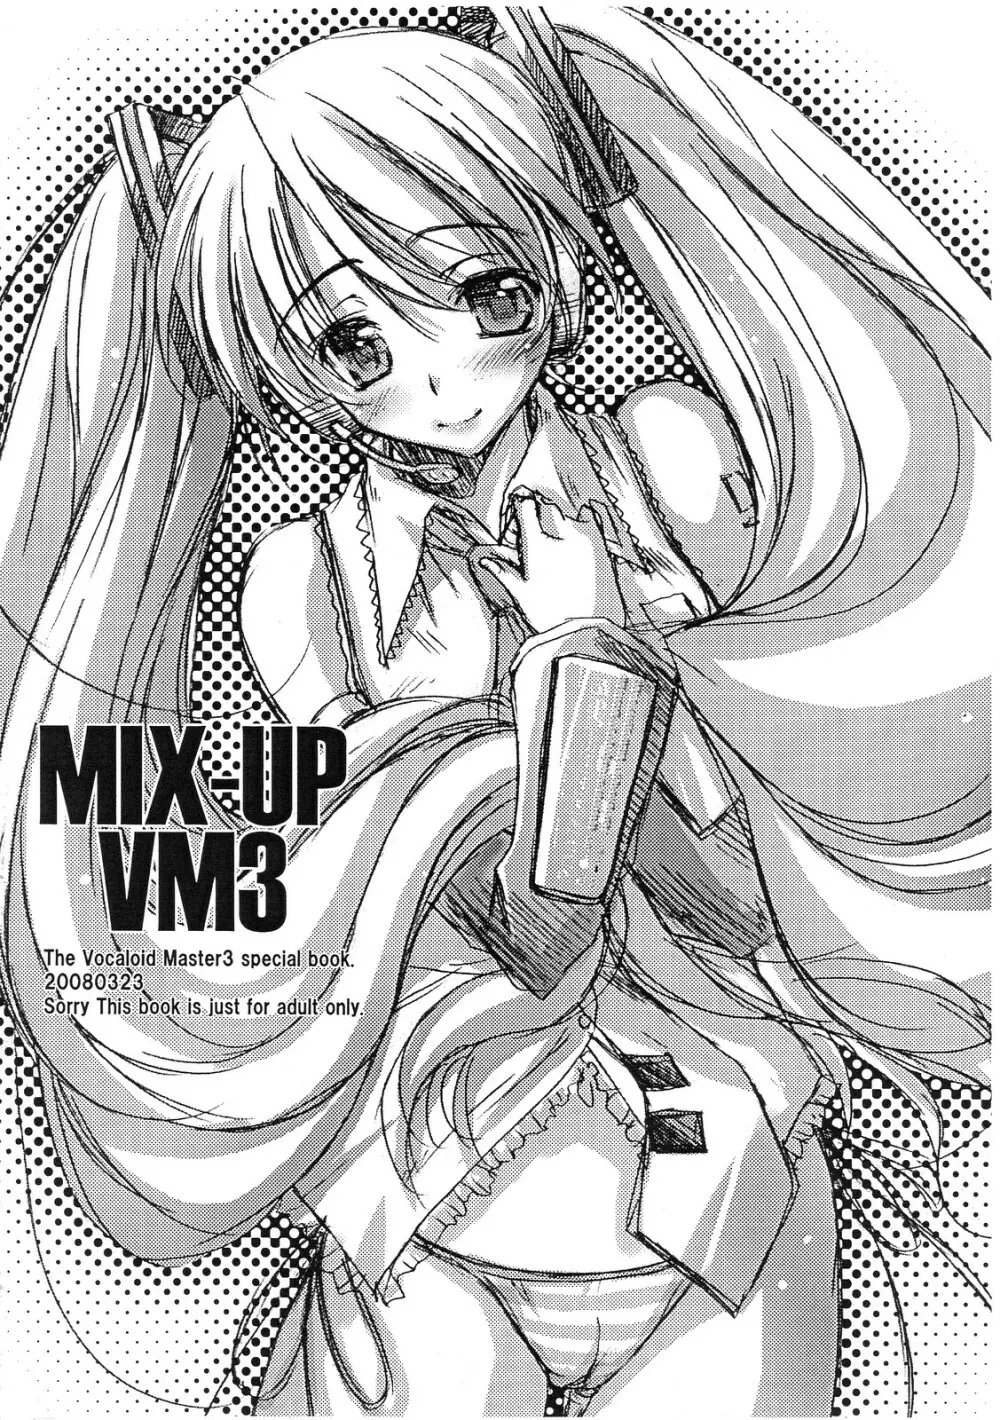 MIX-UP VM3